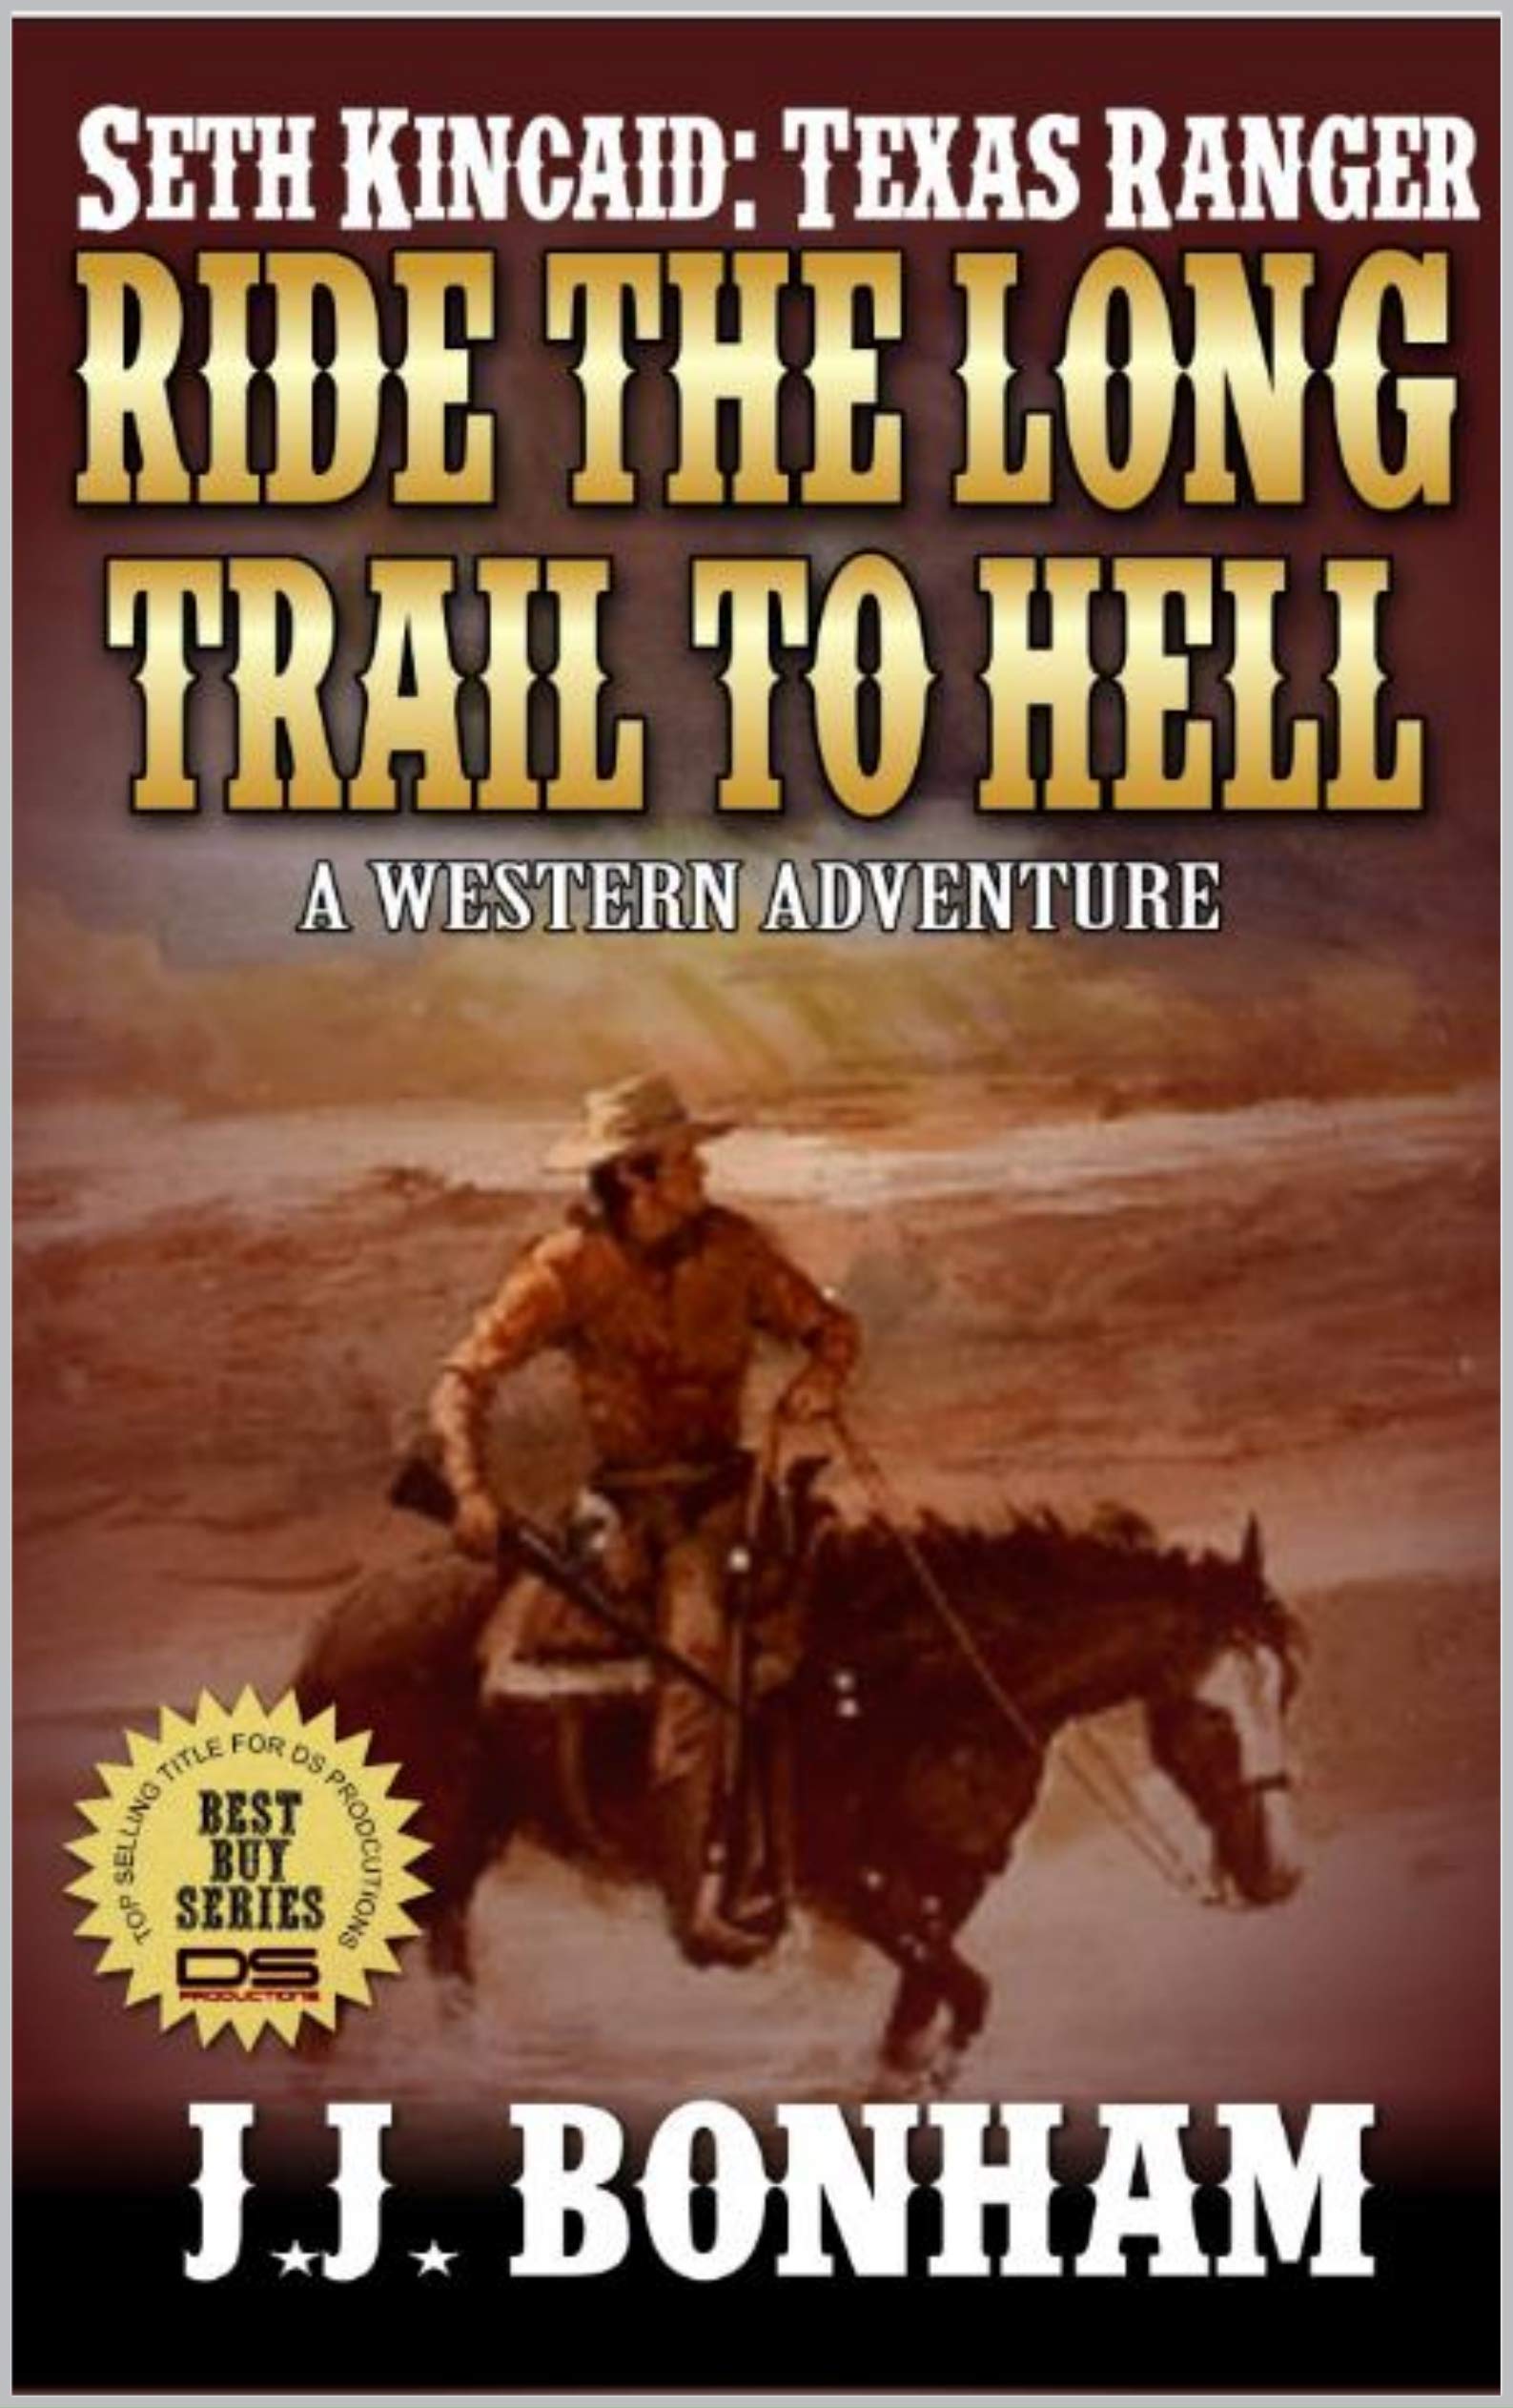 Texas Ranger: Seth Kincaid: Ride The Long Trail To Hell